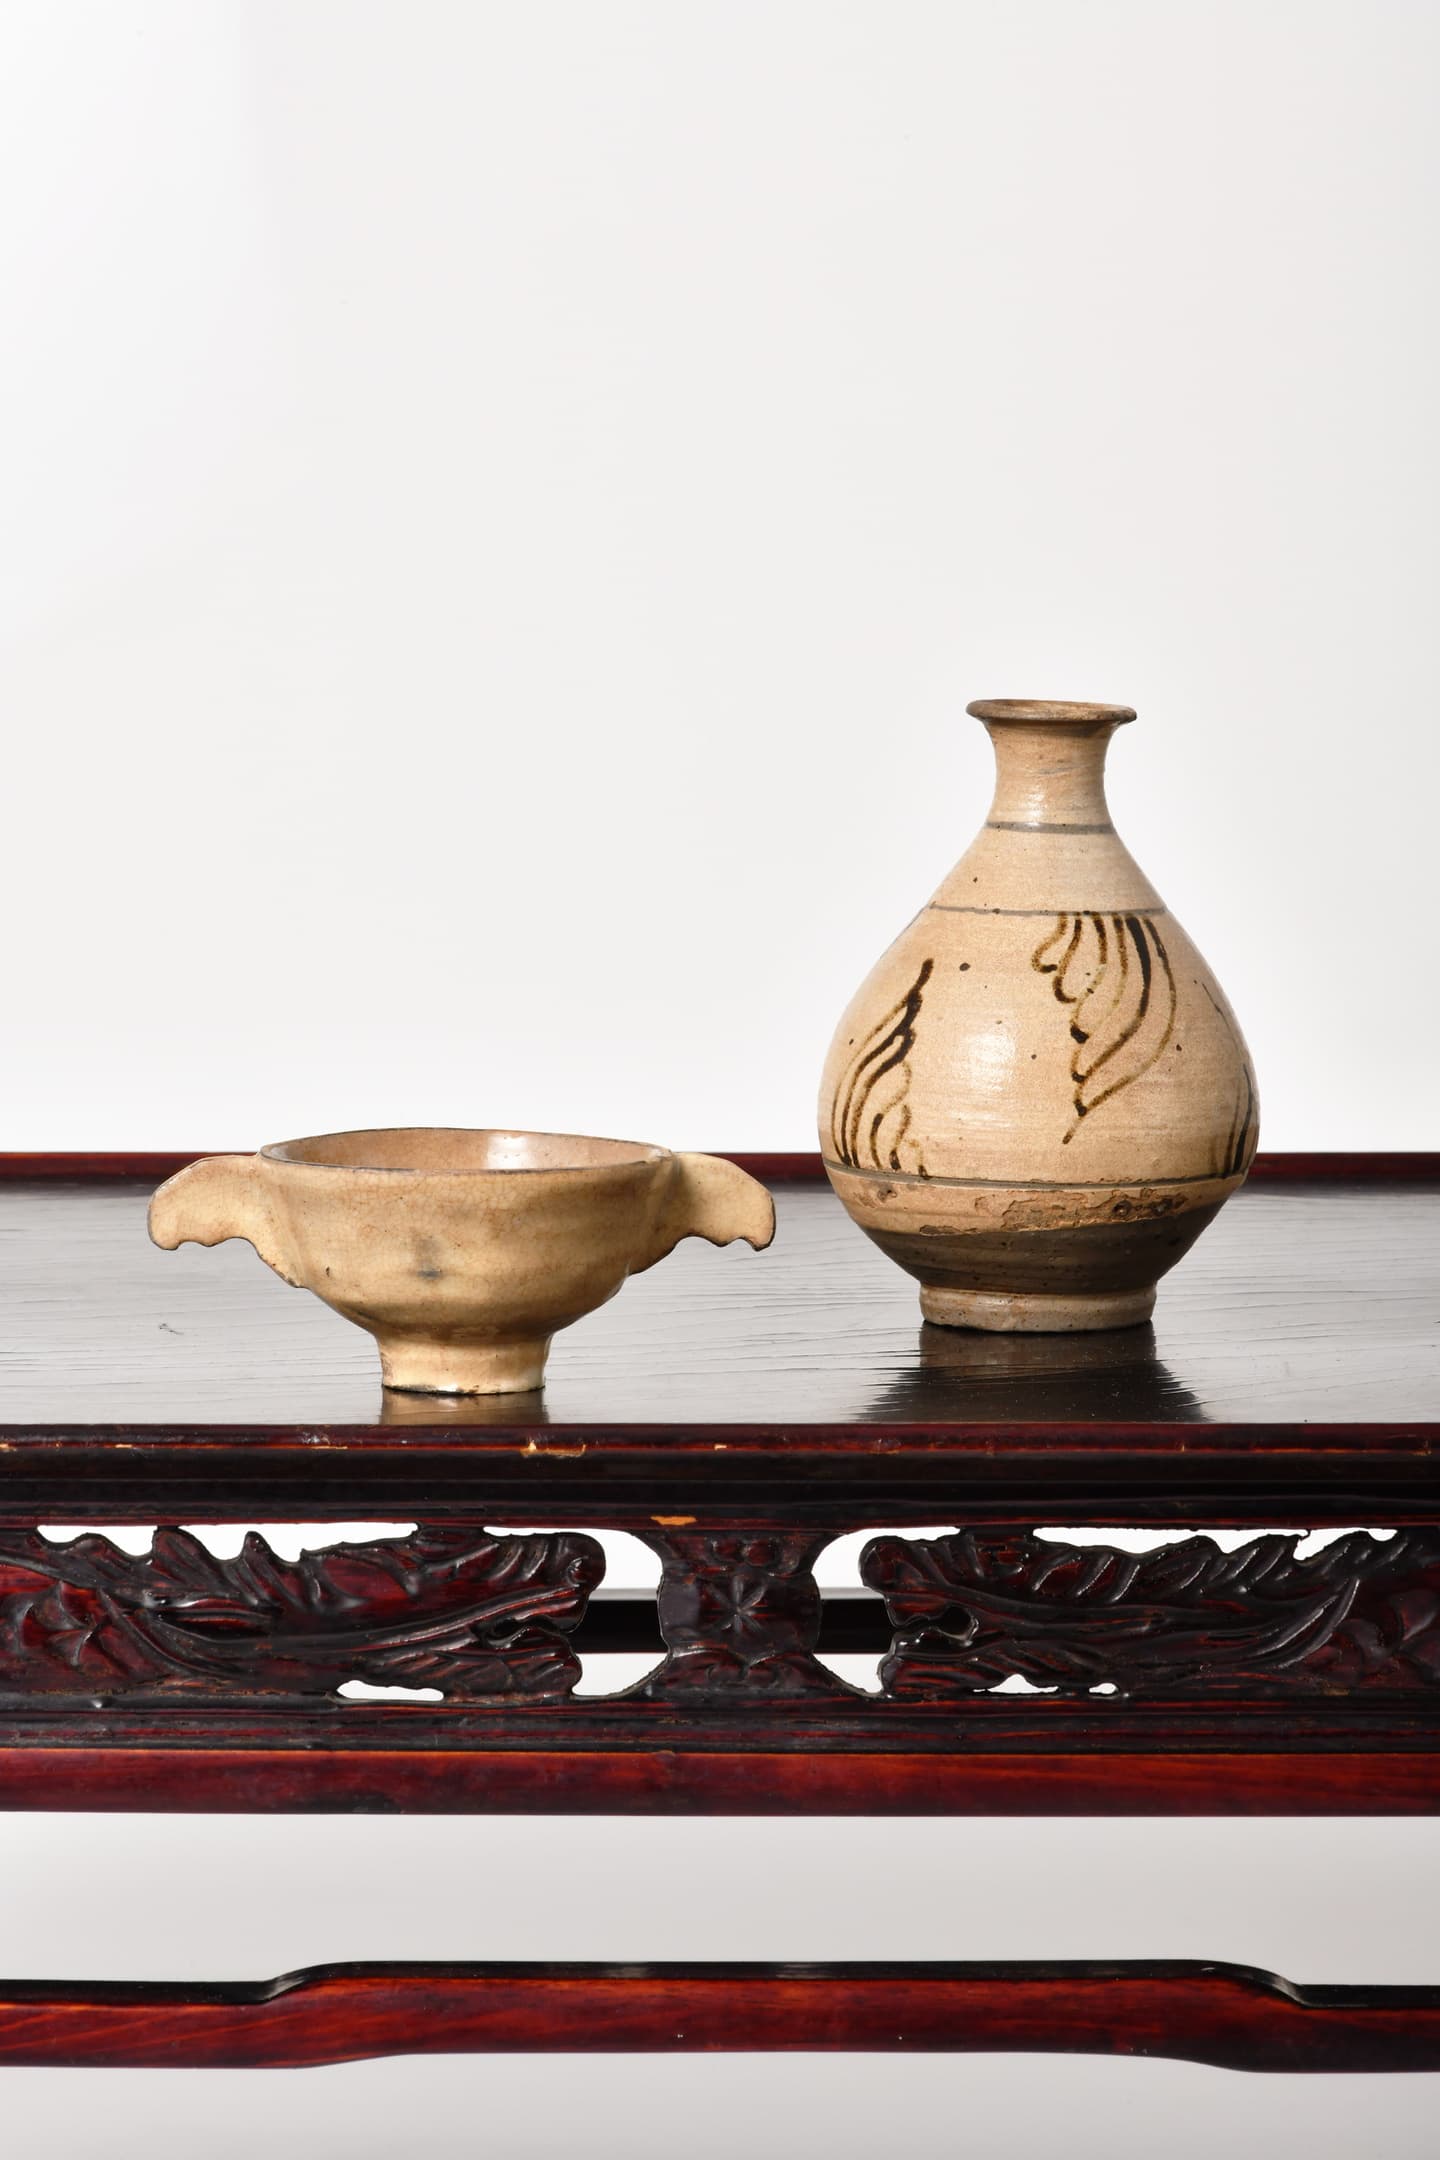 煎茶道具セット。竹盤3本、扇立1本。竹製品。煎茶道具。華道具。昭和時代